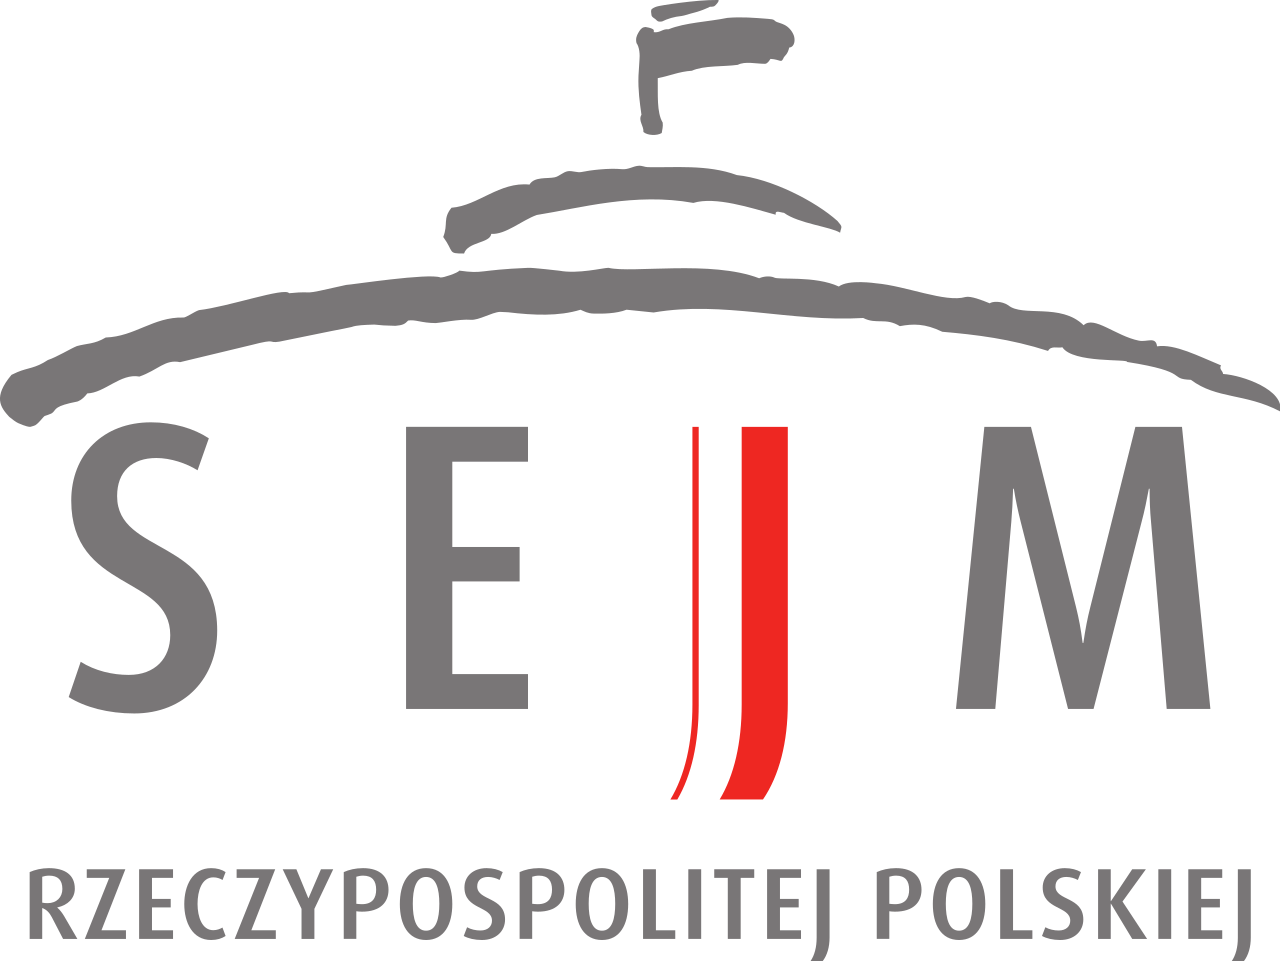 Sejmowa Komisja Cyfryzacji, Innowacyjności i Nowoczesnych Technologii